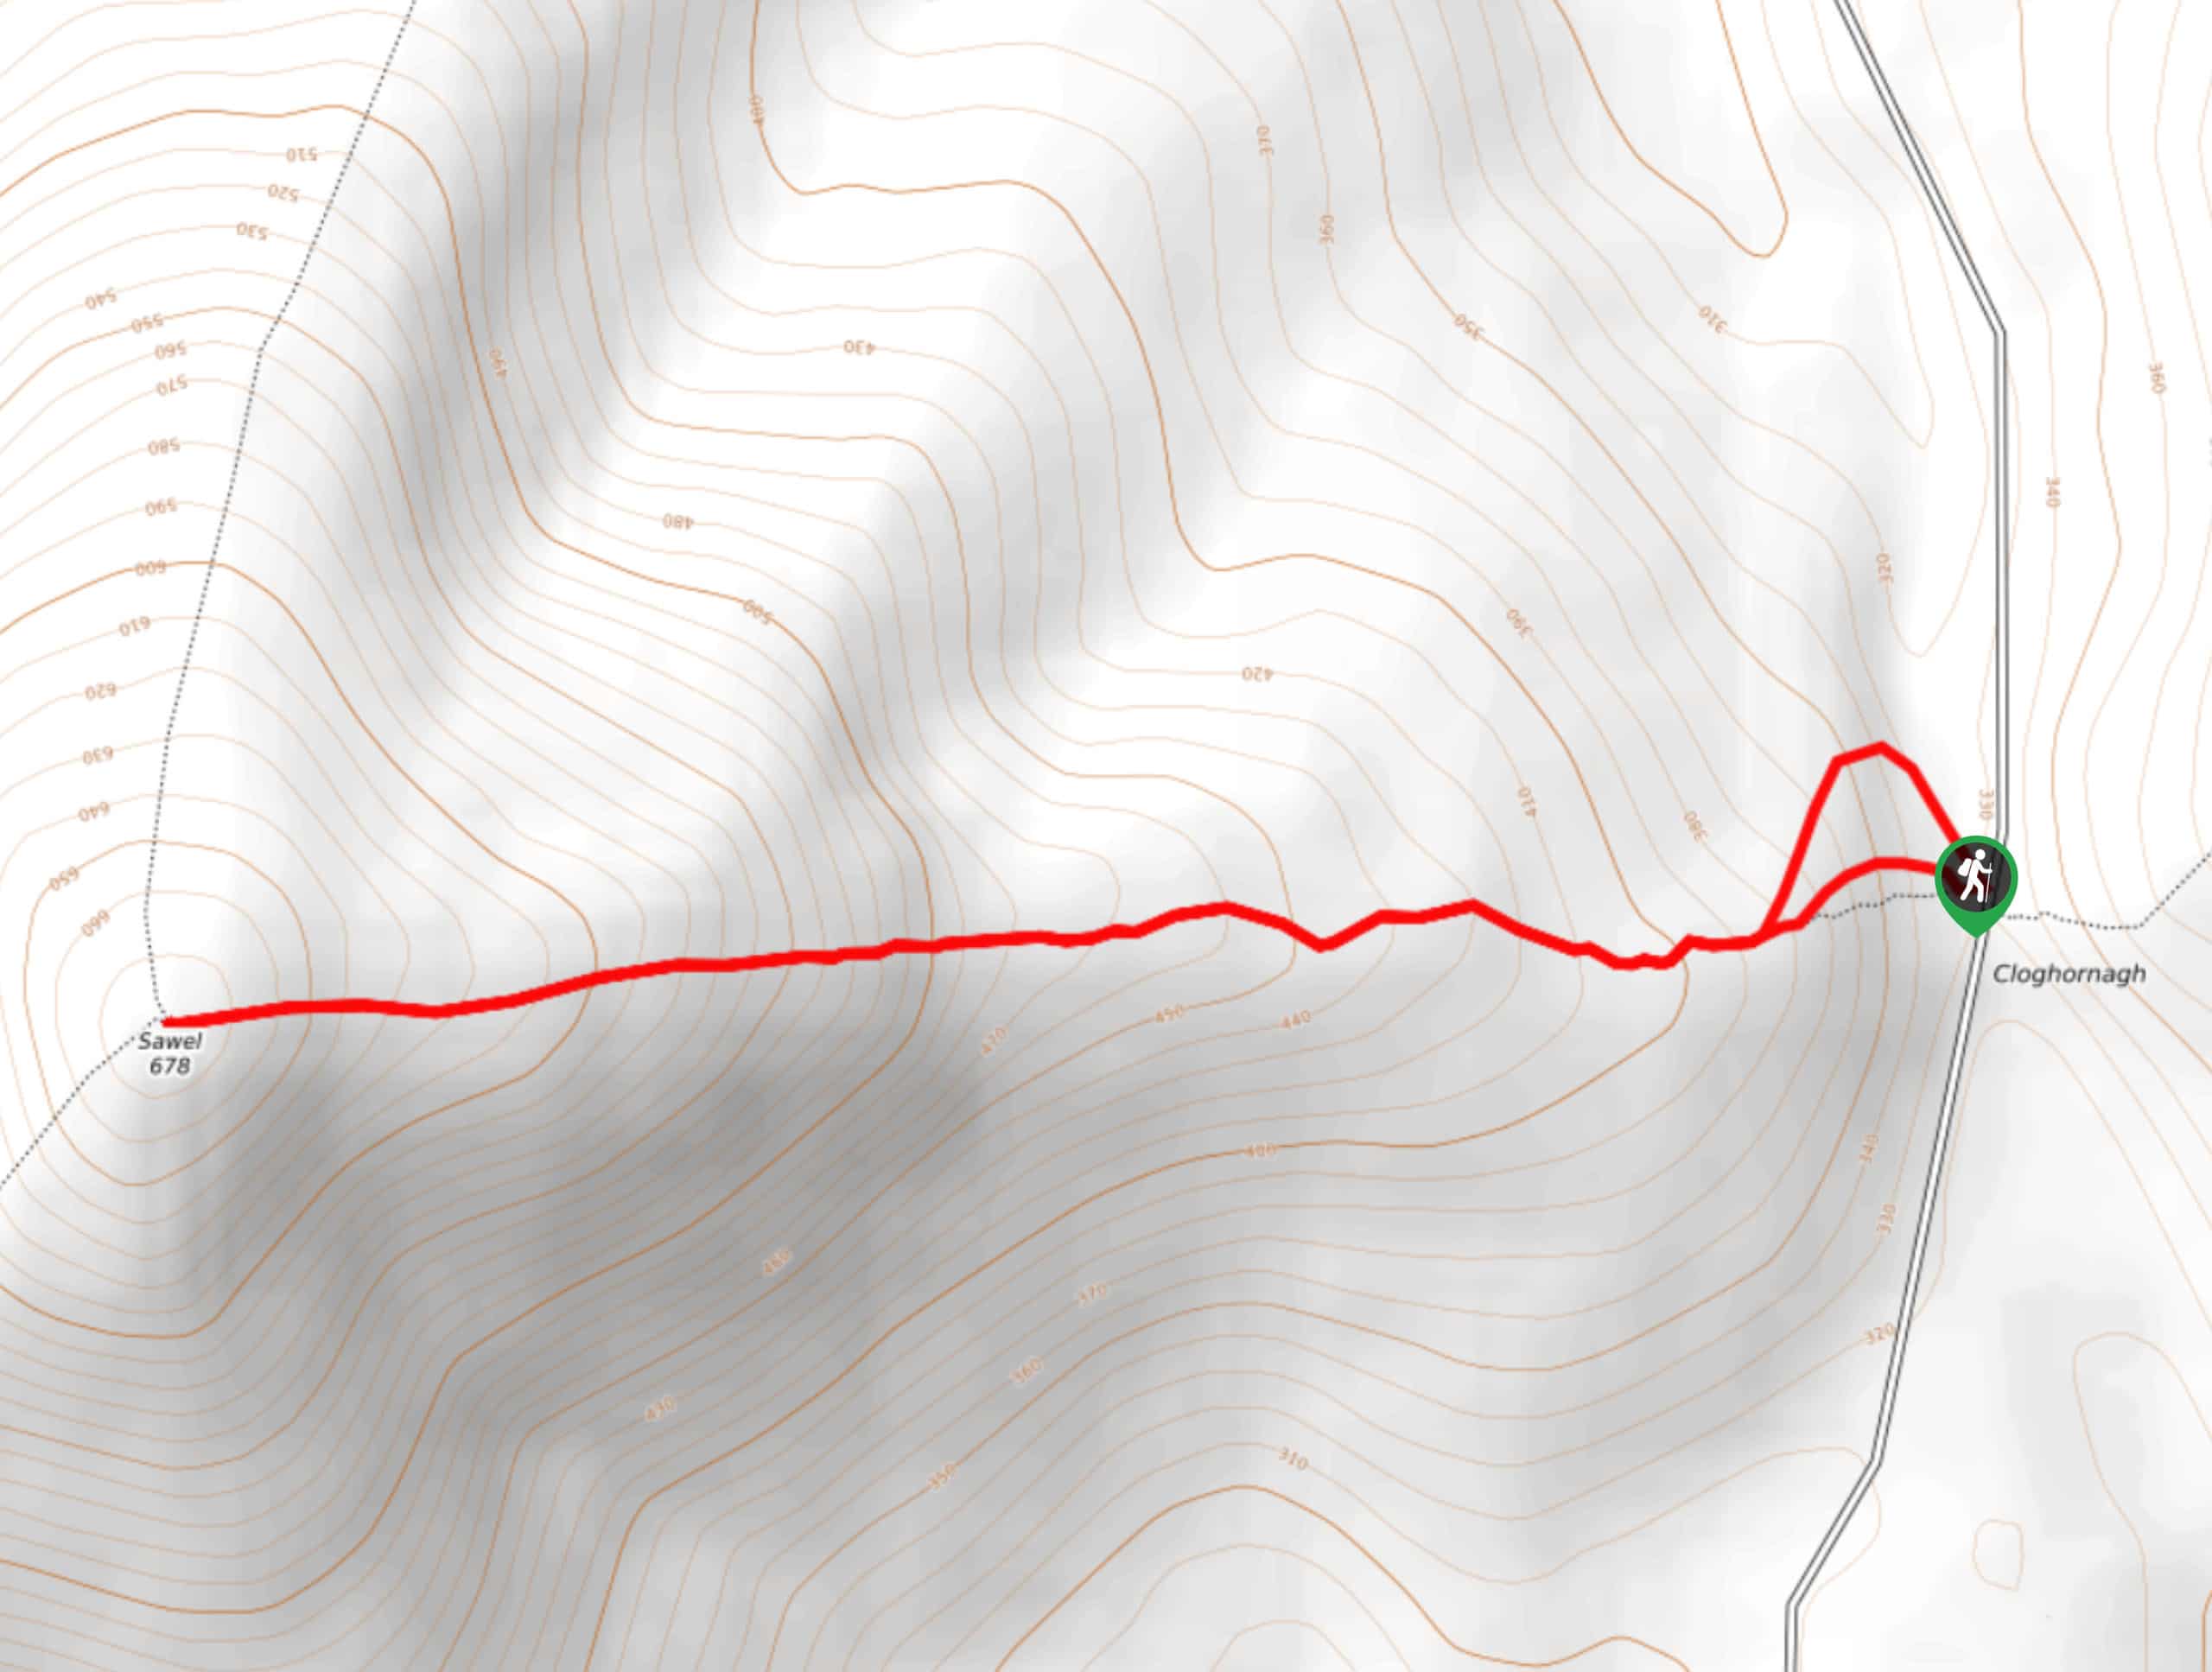 Sawel Mountain Trail Map